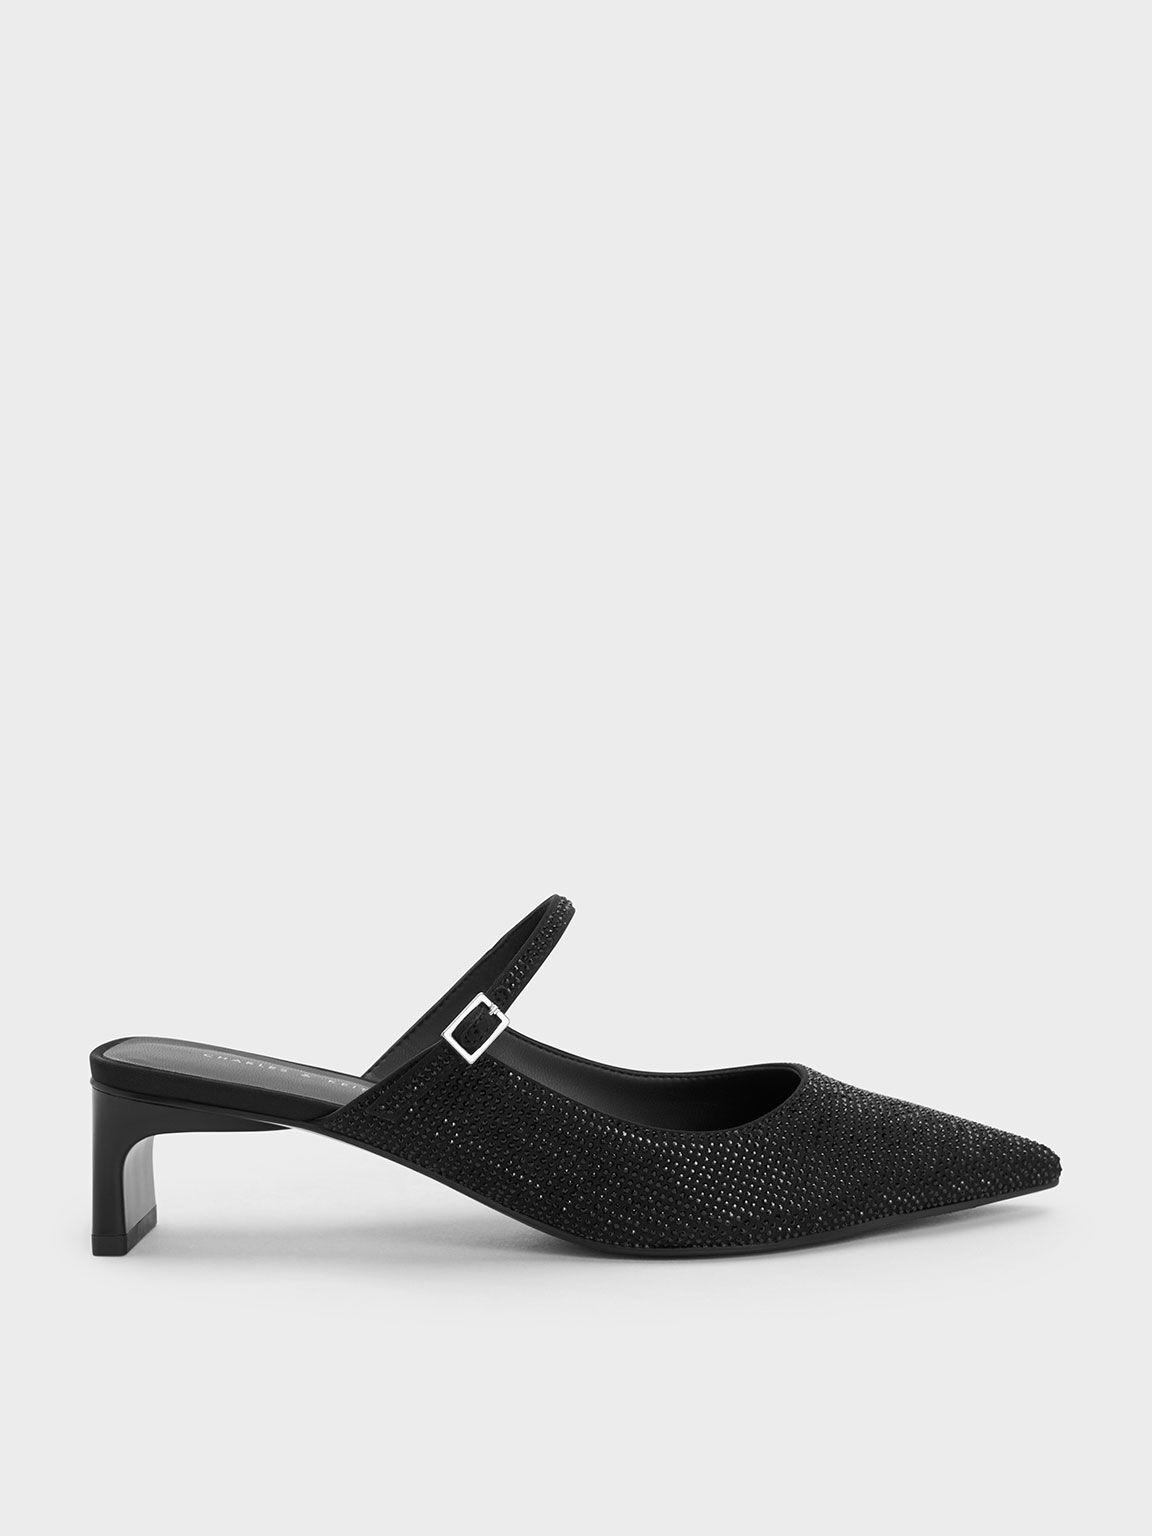 Pointed Toe Low Heels Mule Sandals